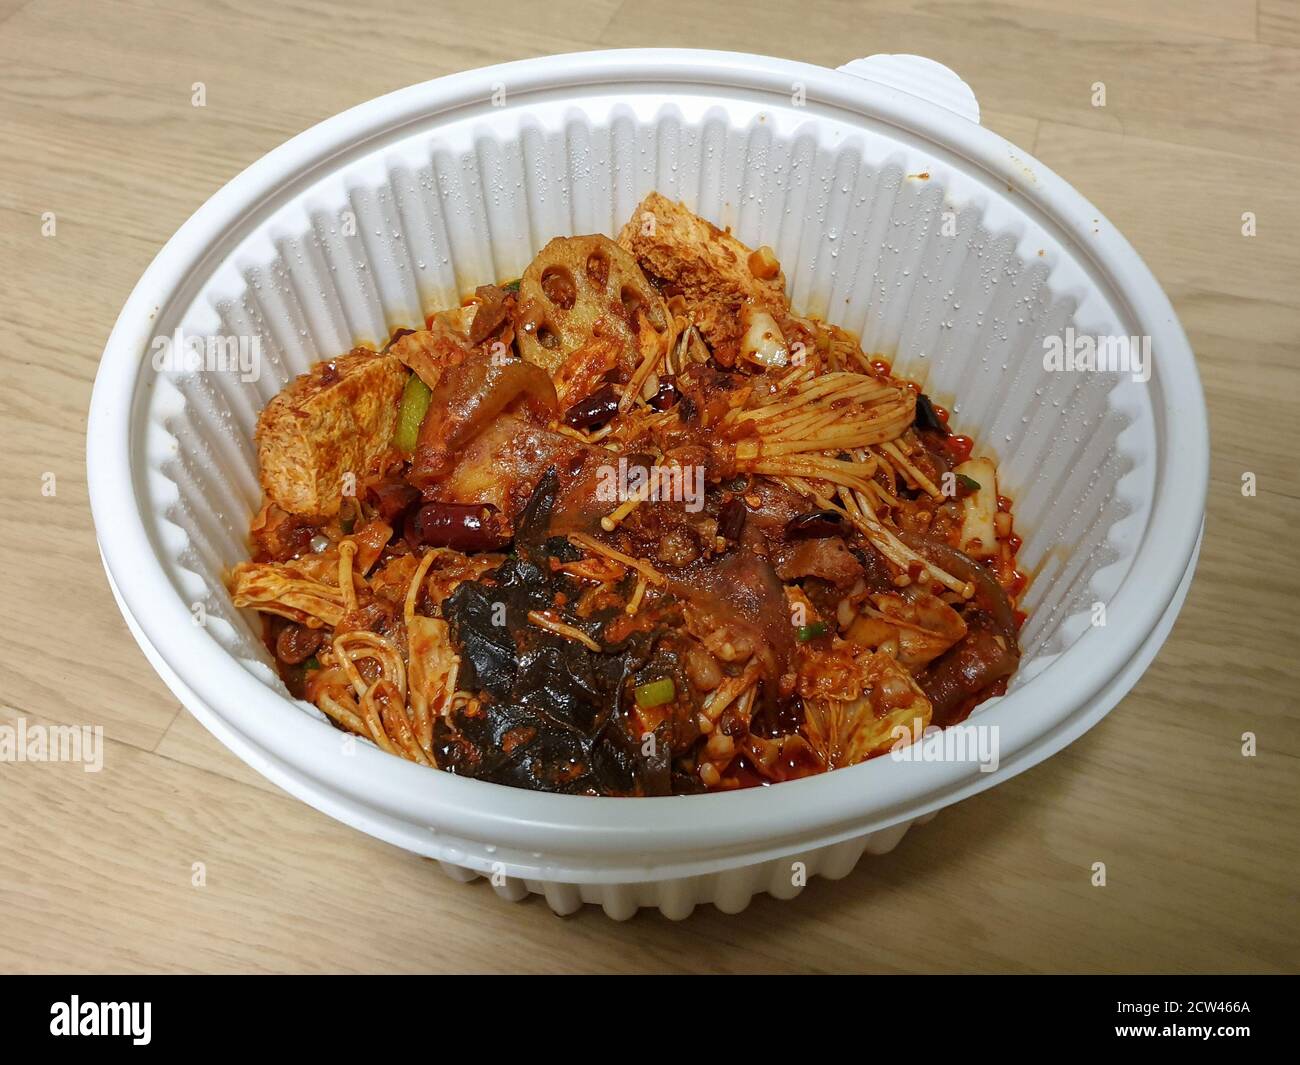 MA la xiang Pan oder Ma la xiang guo, ein chinesisches Gericht mit Fleisch und Gemüse. Würziger, betäubender Topf mit Rührbesen. Lebensmittel in der Plastikschüssel zum Mitnehmen. Stockfoto